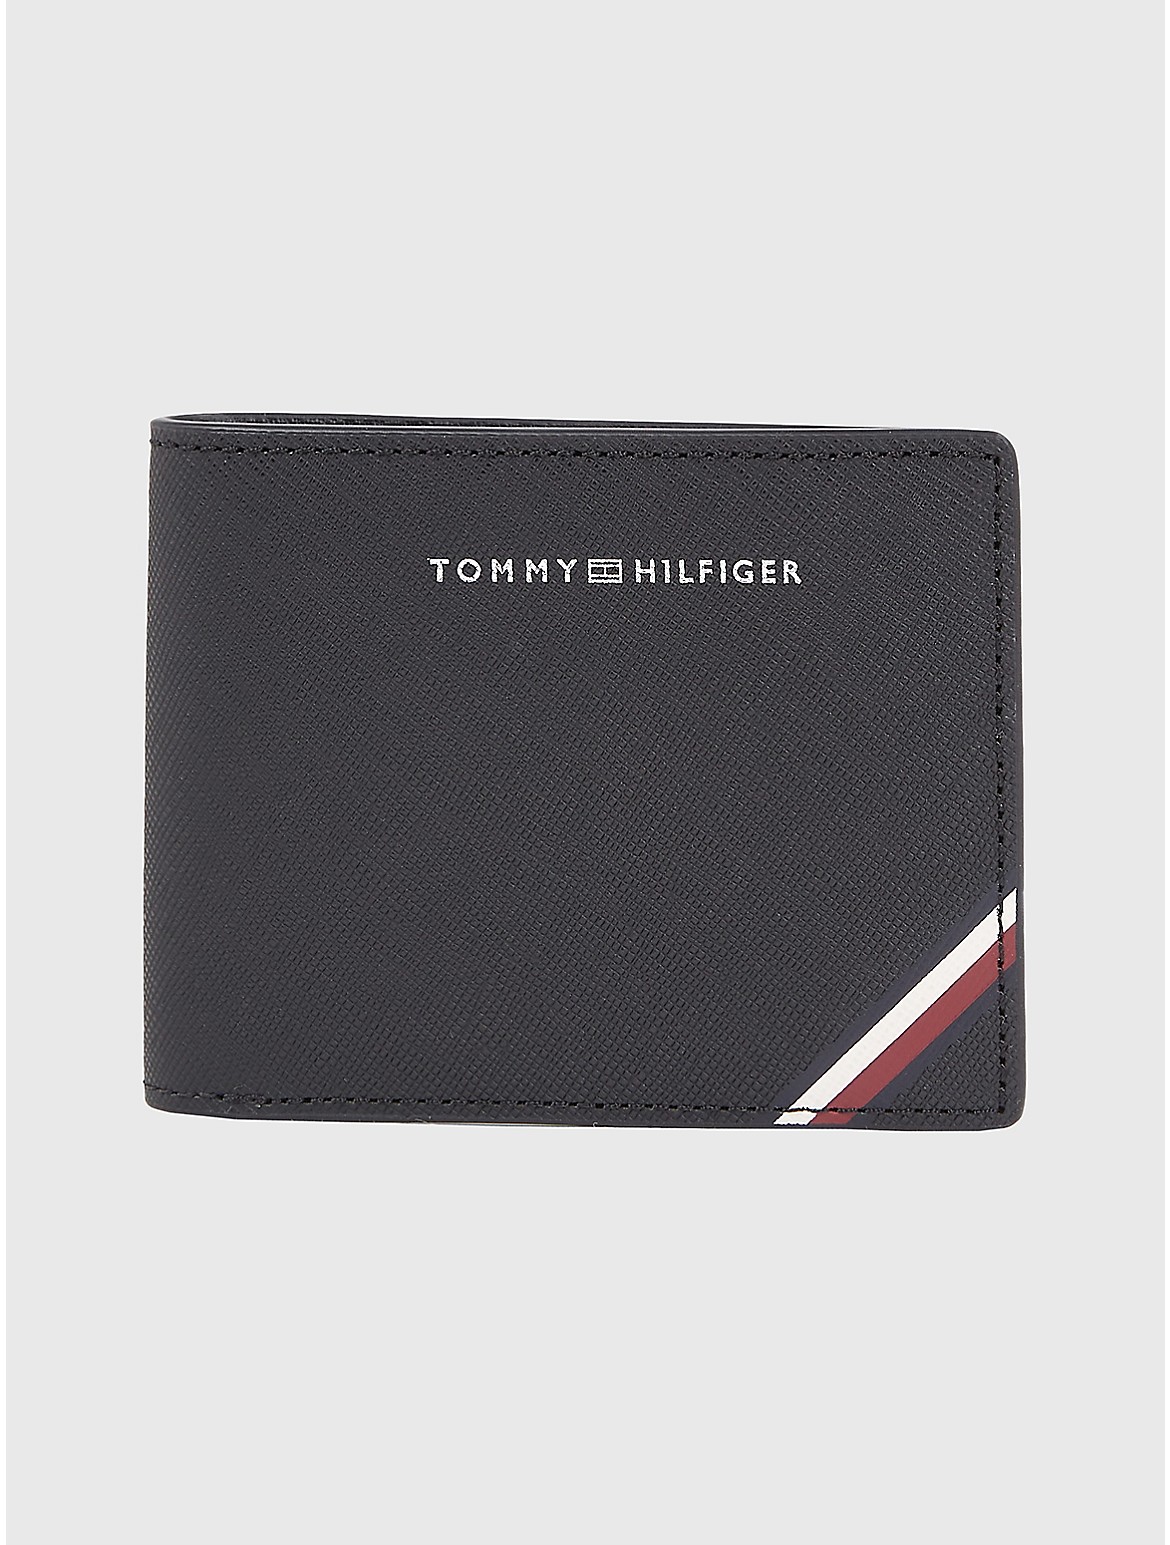 Tommy Hilfiger Men's Stripe Leather Mini Credit Card Wallet - Black